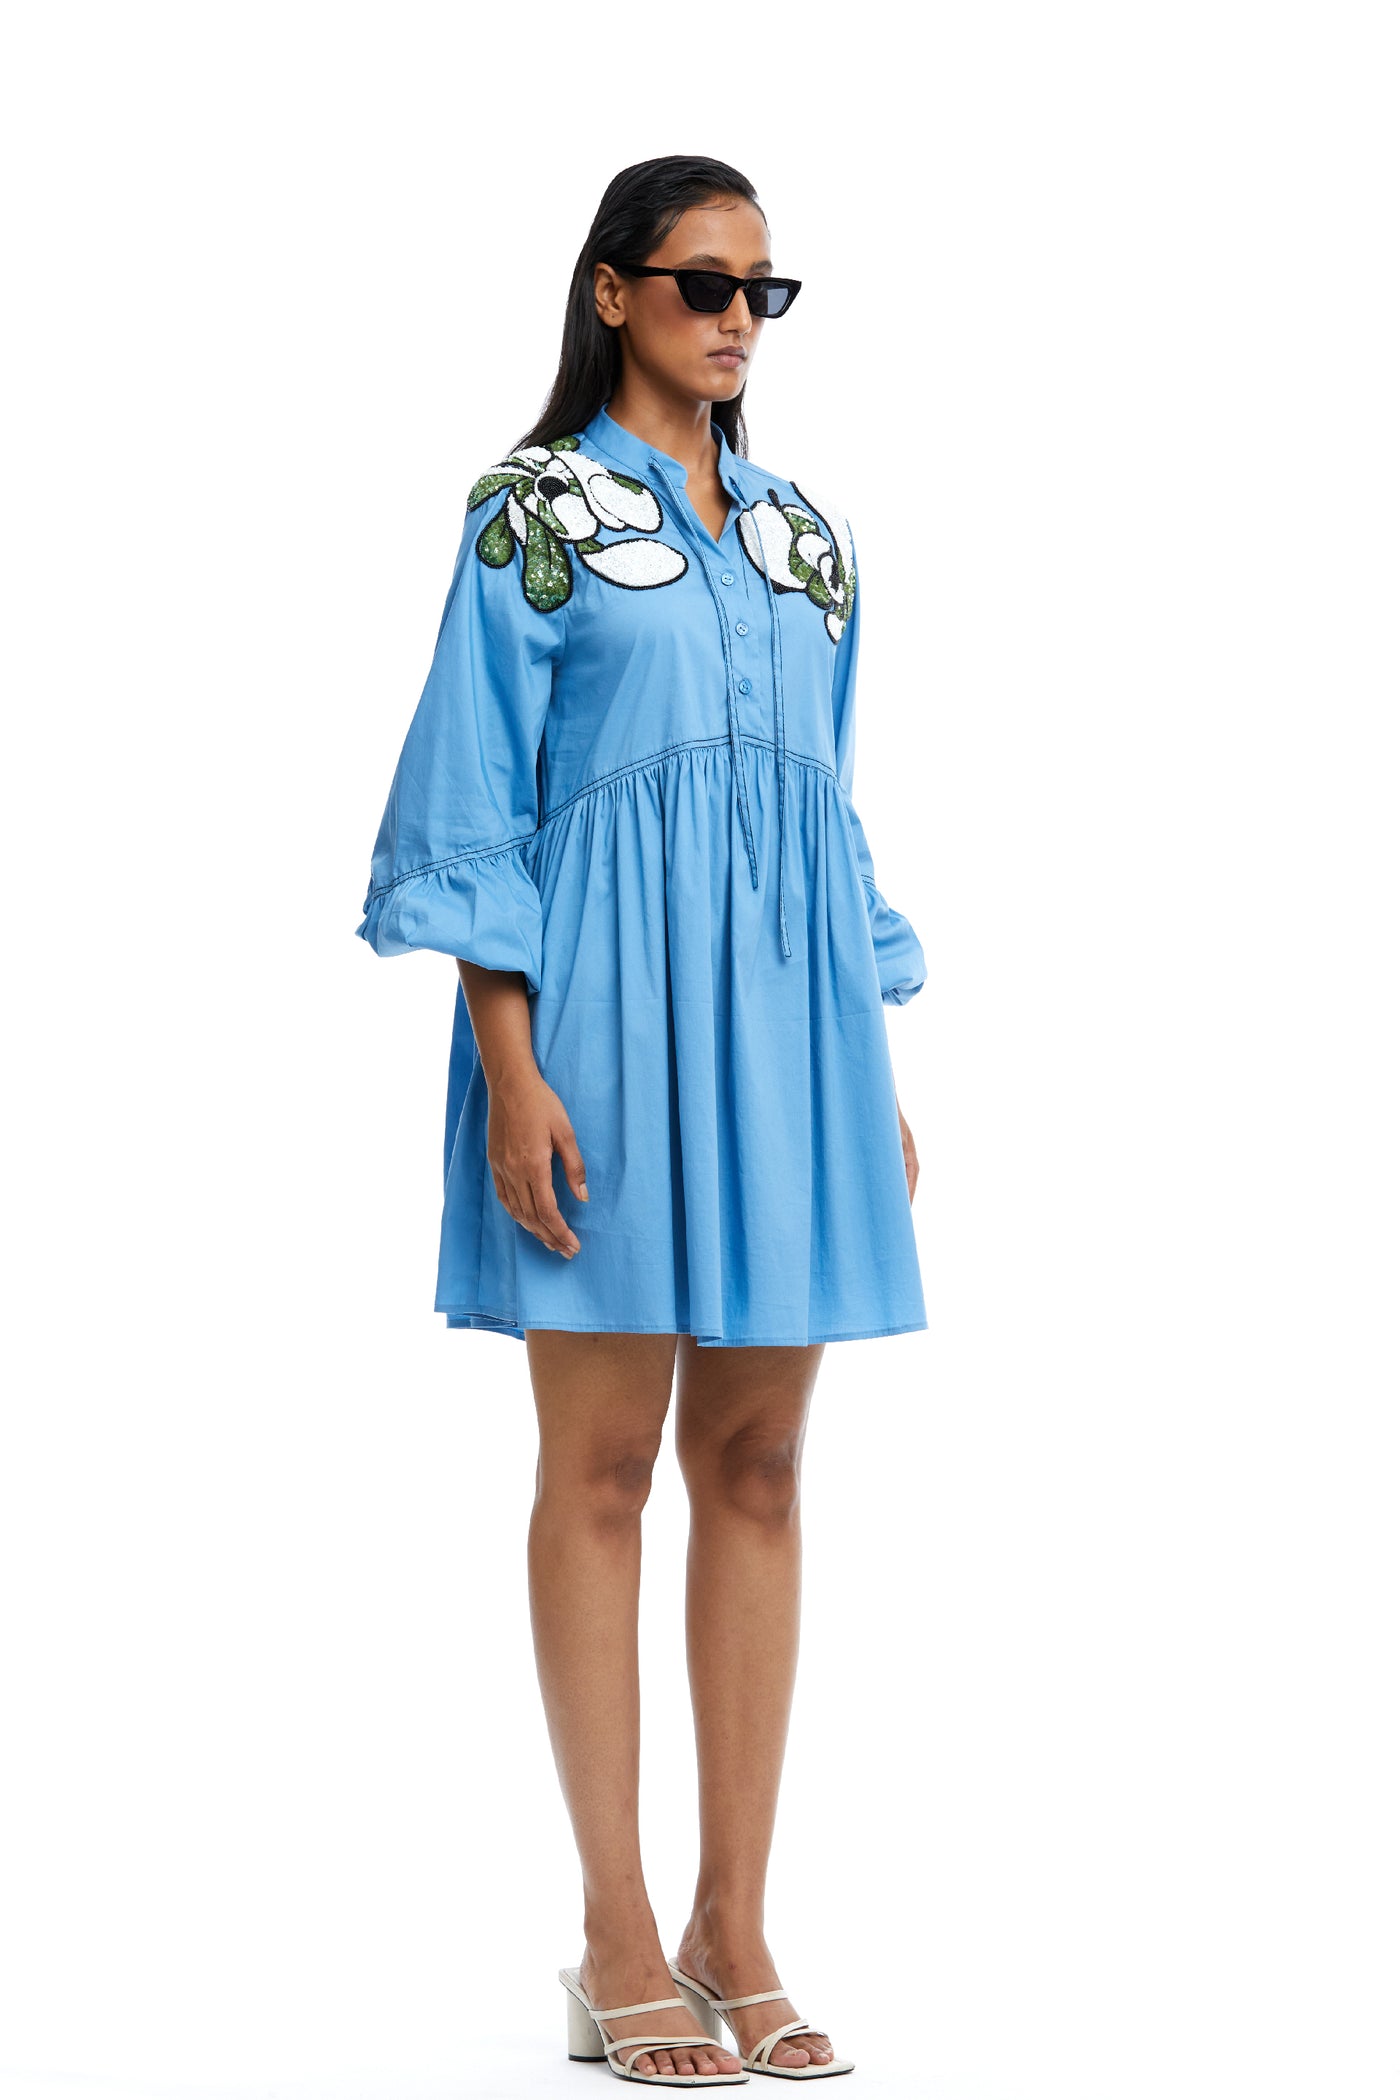 Kanika Goyal Label Warped Vine Embellished Tie Neck Dress Blue indian designer wear online shopping melange singapore